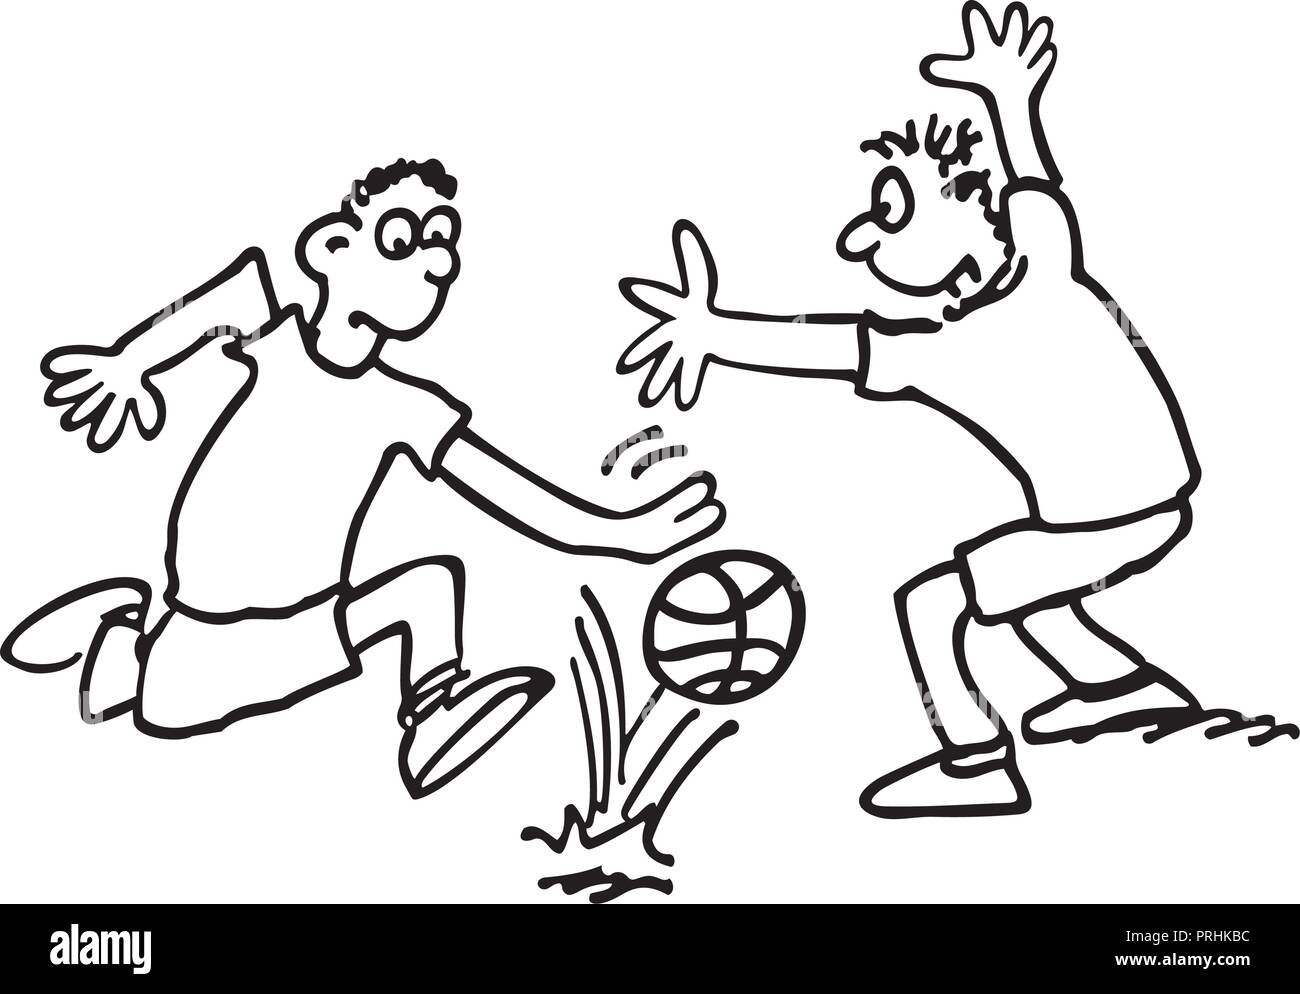 Les garçons jouent au football. décrites croquis dessin animé illustration vecteur. Illustration de Vecteur